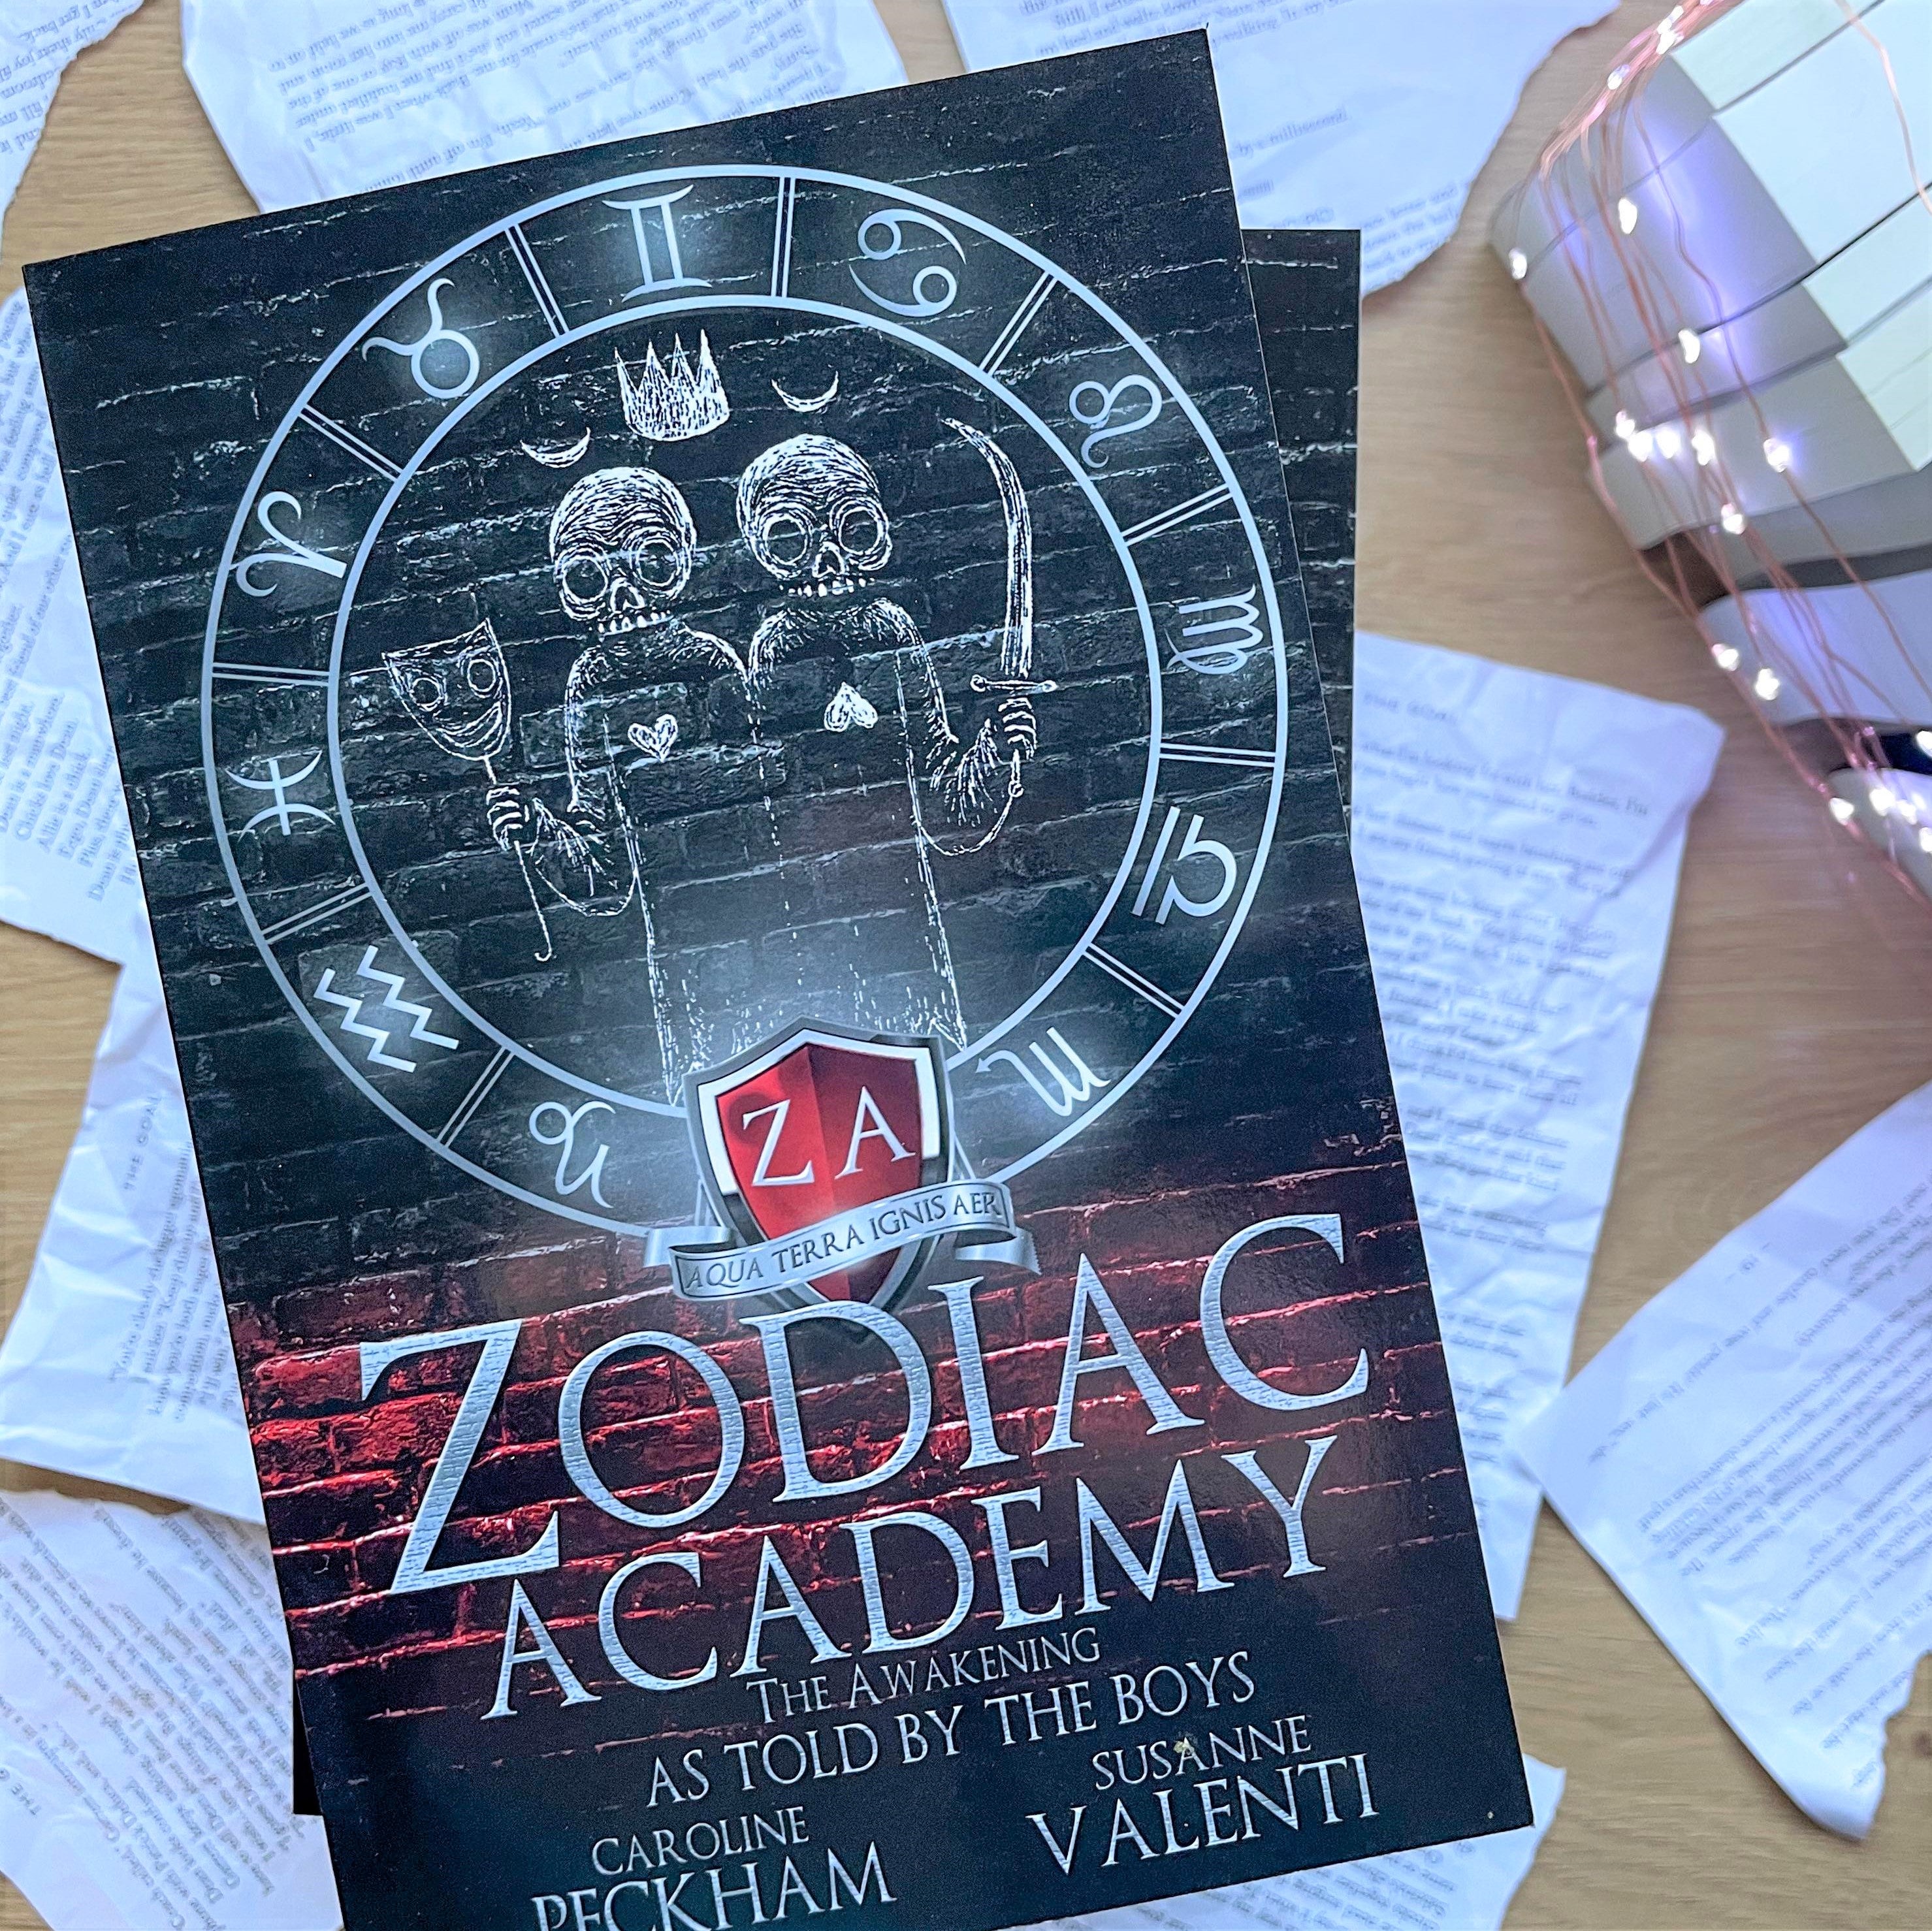 Zodiac Academy by Caroline Peckham & Susanne Valenti